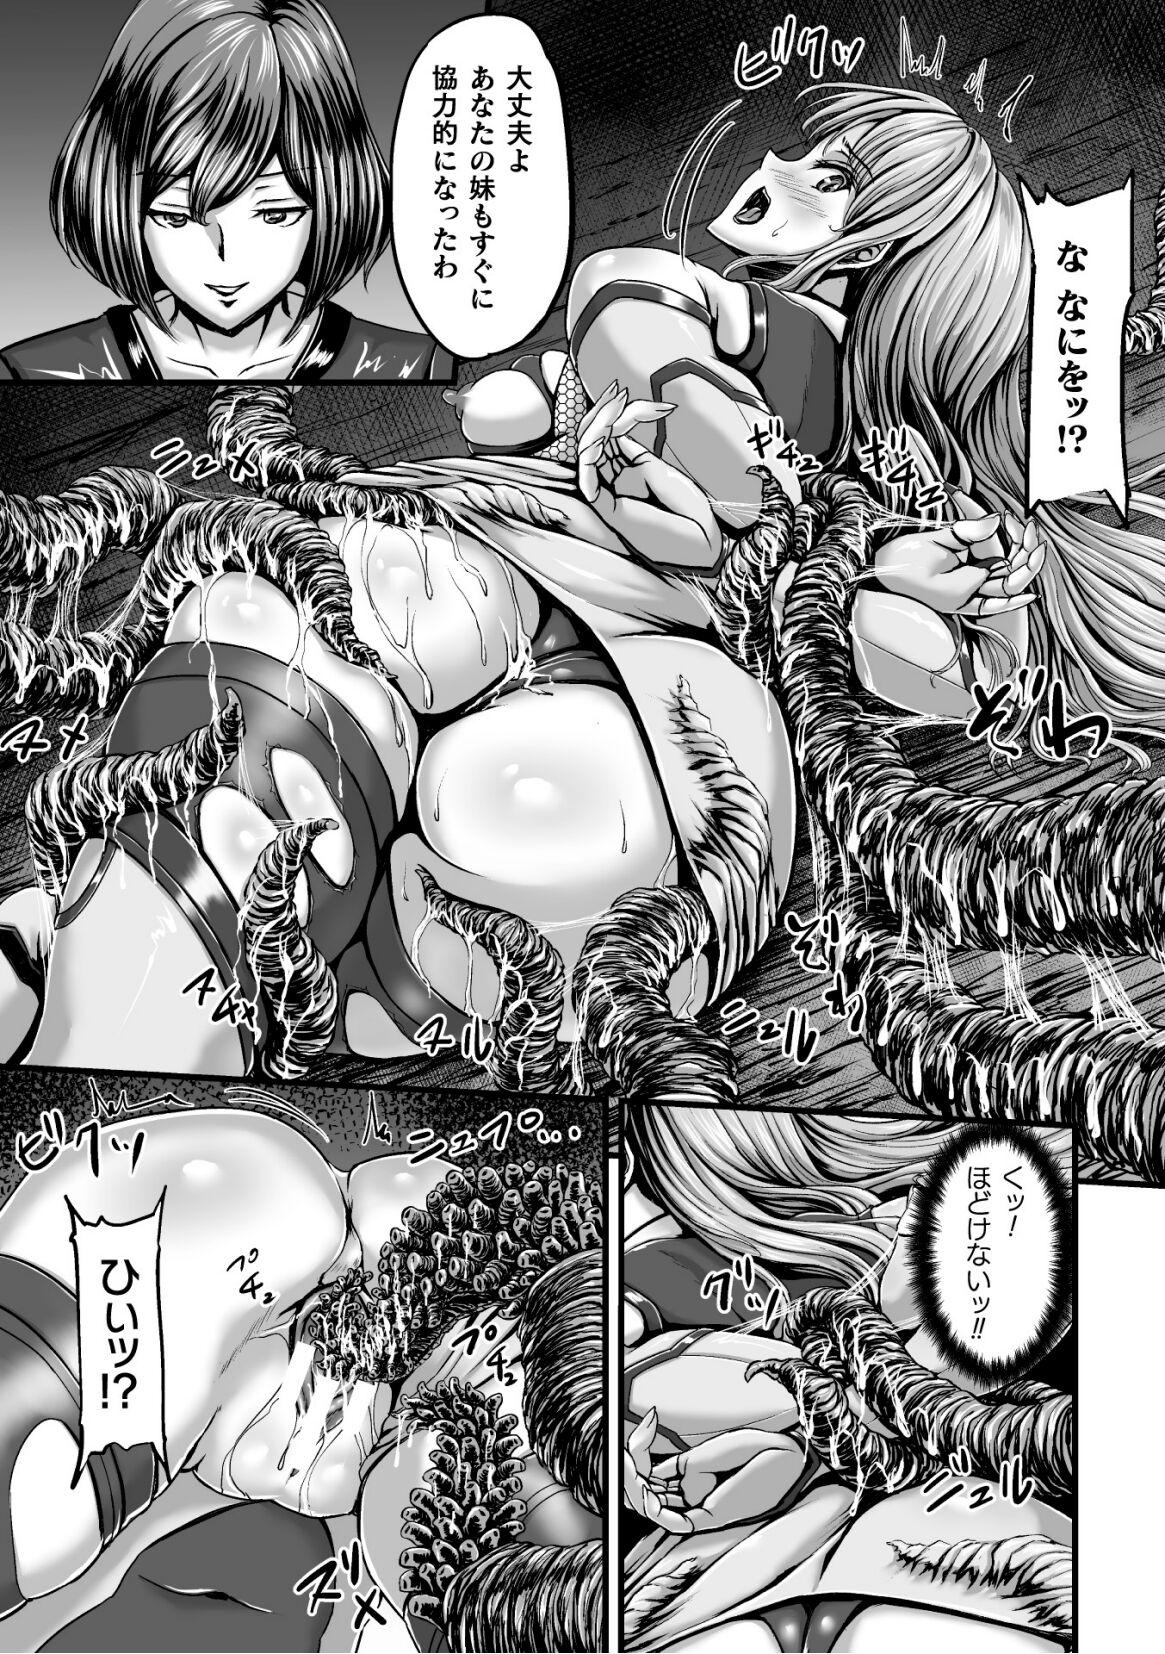 Pale Kangoku Tentacle Battleship Episode 2 - Original Bear - Page 11